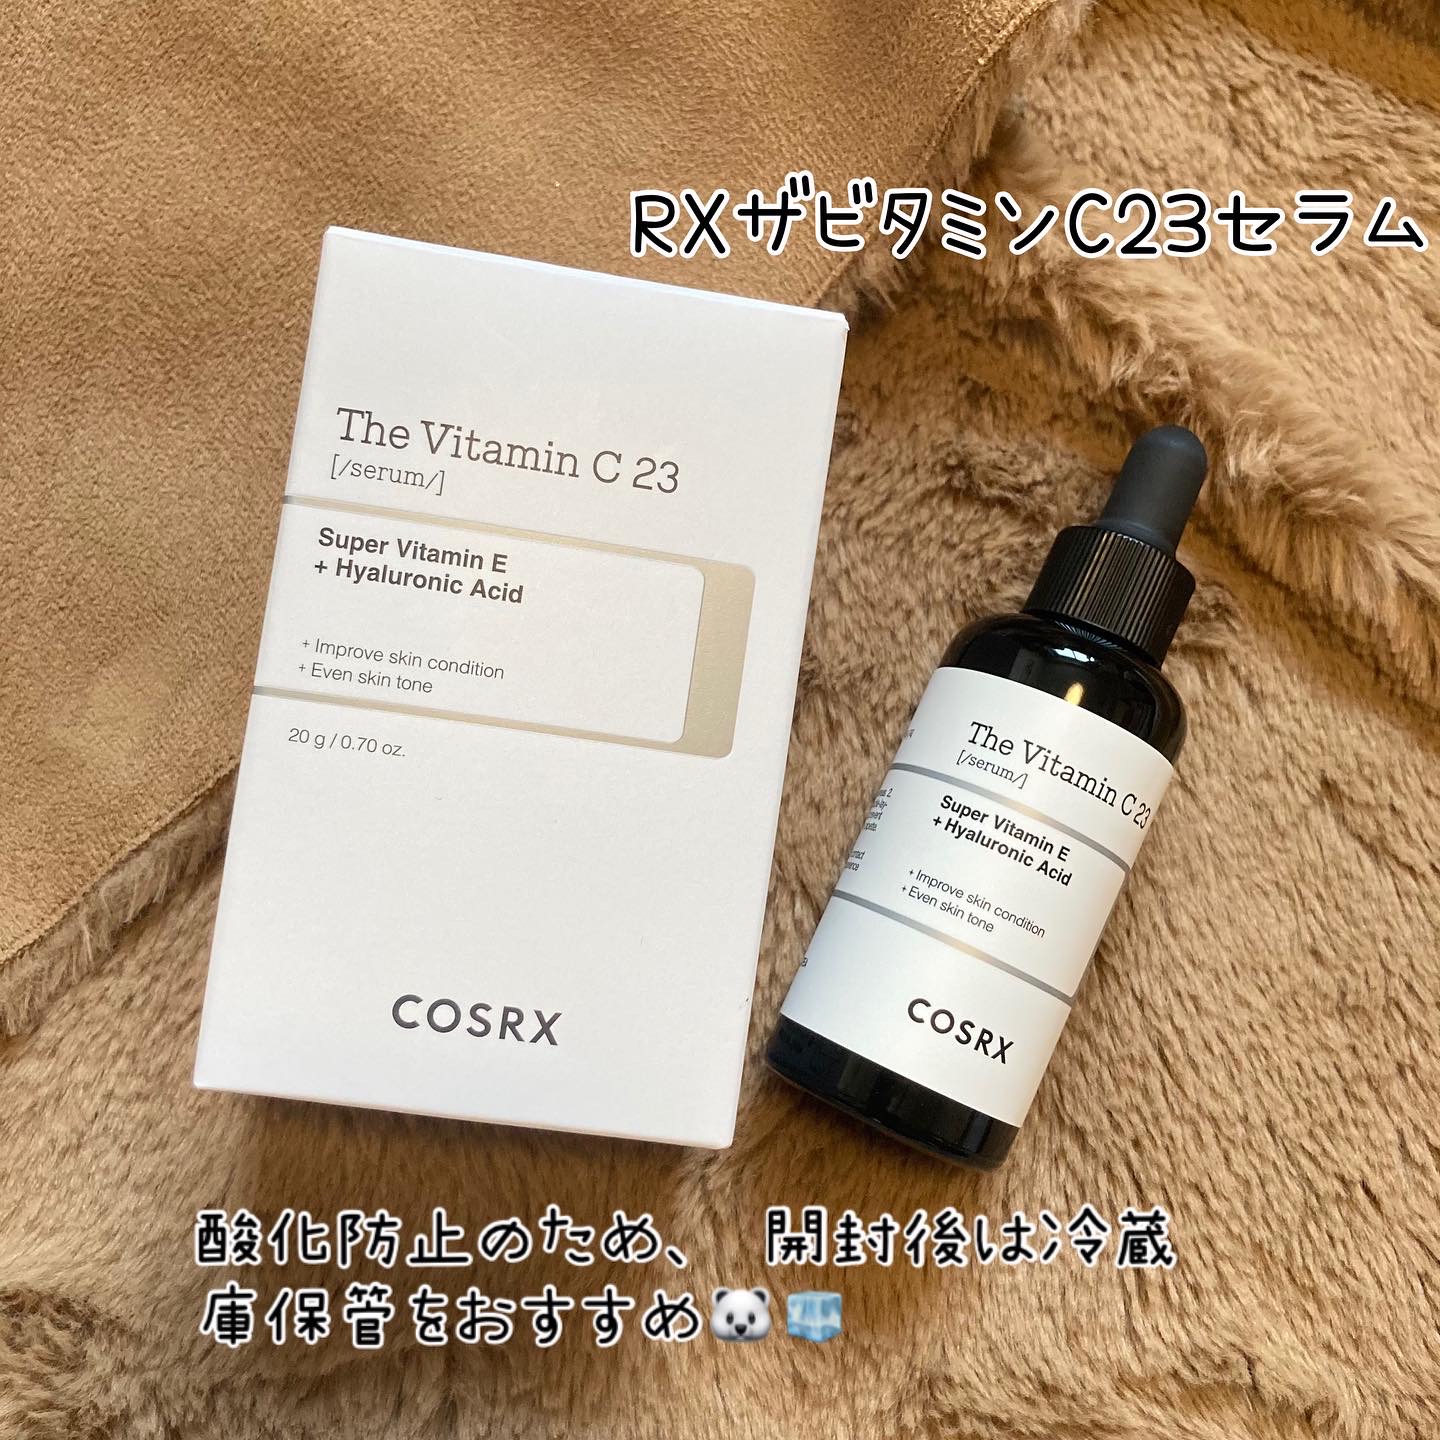 COSRX(コスアールエックス) / RXザ・ビタミンC23セラムの口コミ